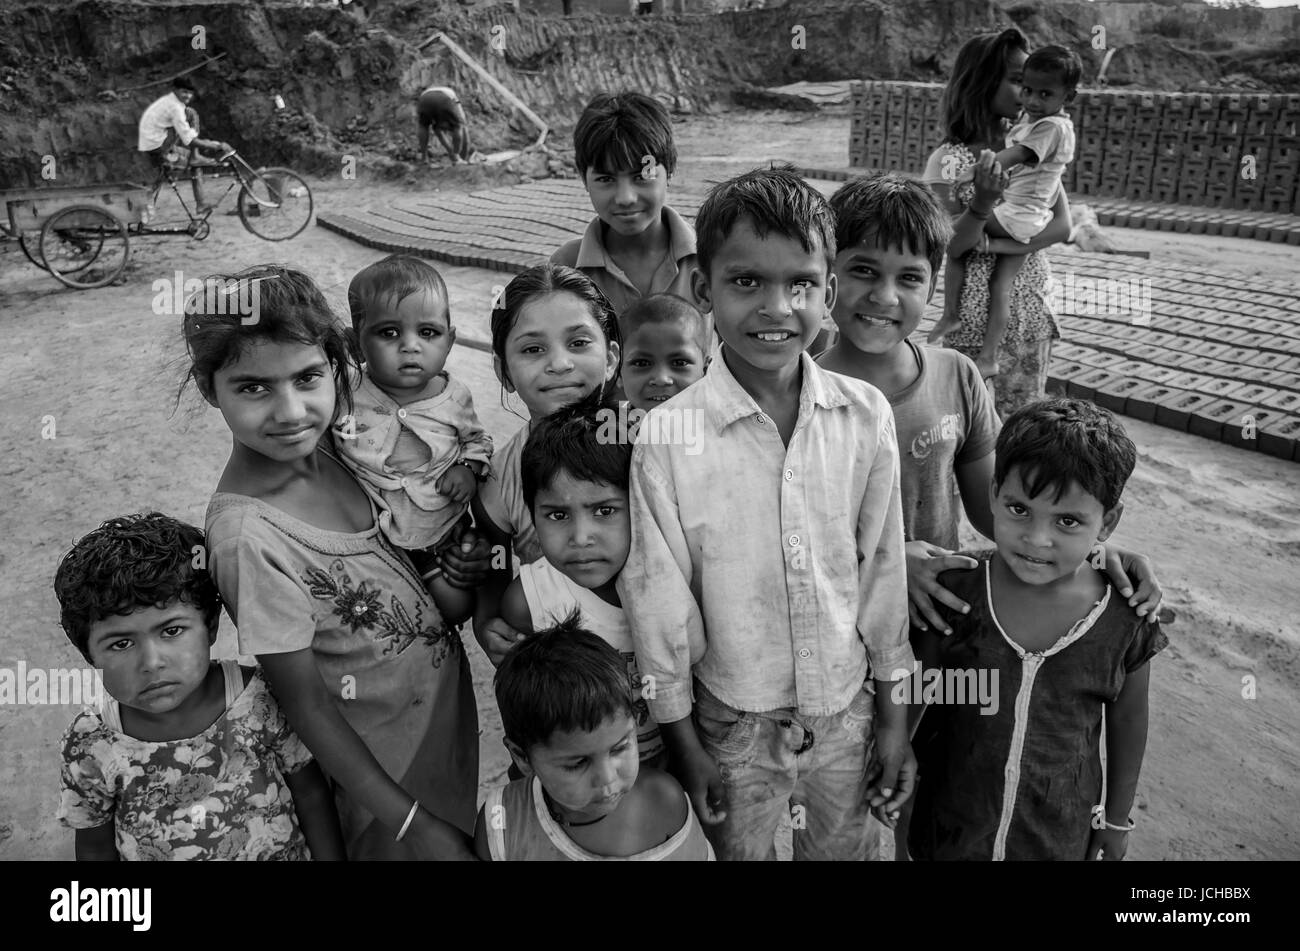 Amritsar, Punjab, india - 21 avril 2017 : photo monochrome d'enfants indiens tenant leurs jeunes frères et sœurs Banque D'Images